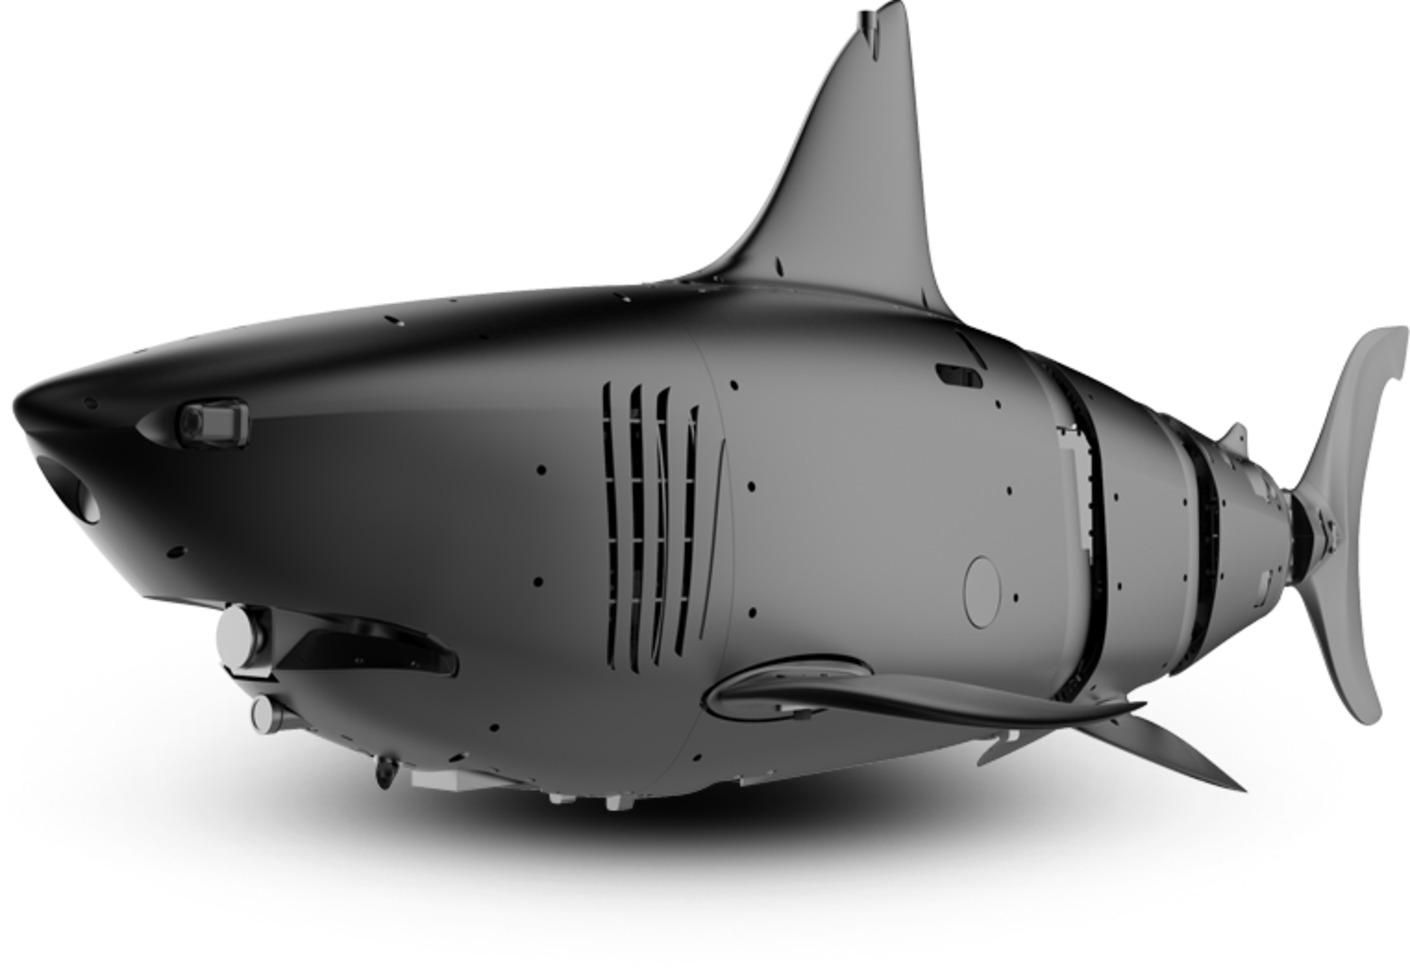 Как 2-метровая акула: китайцы разработали новый дрон для подводной разведки